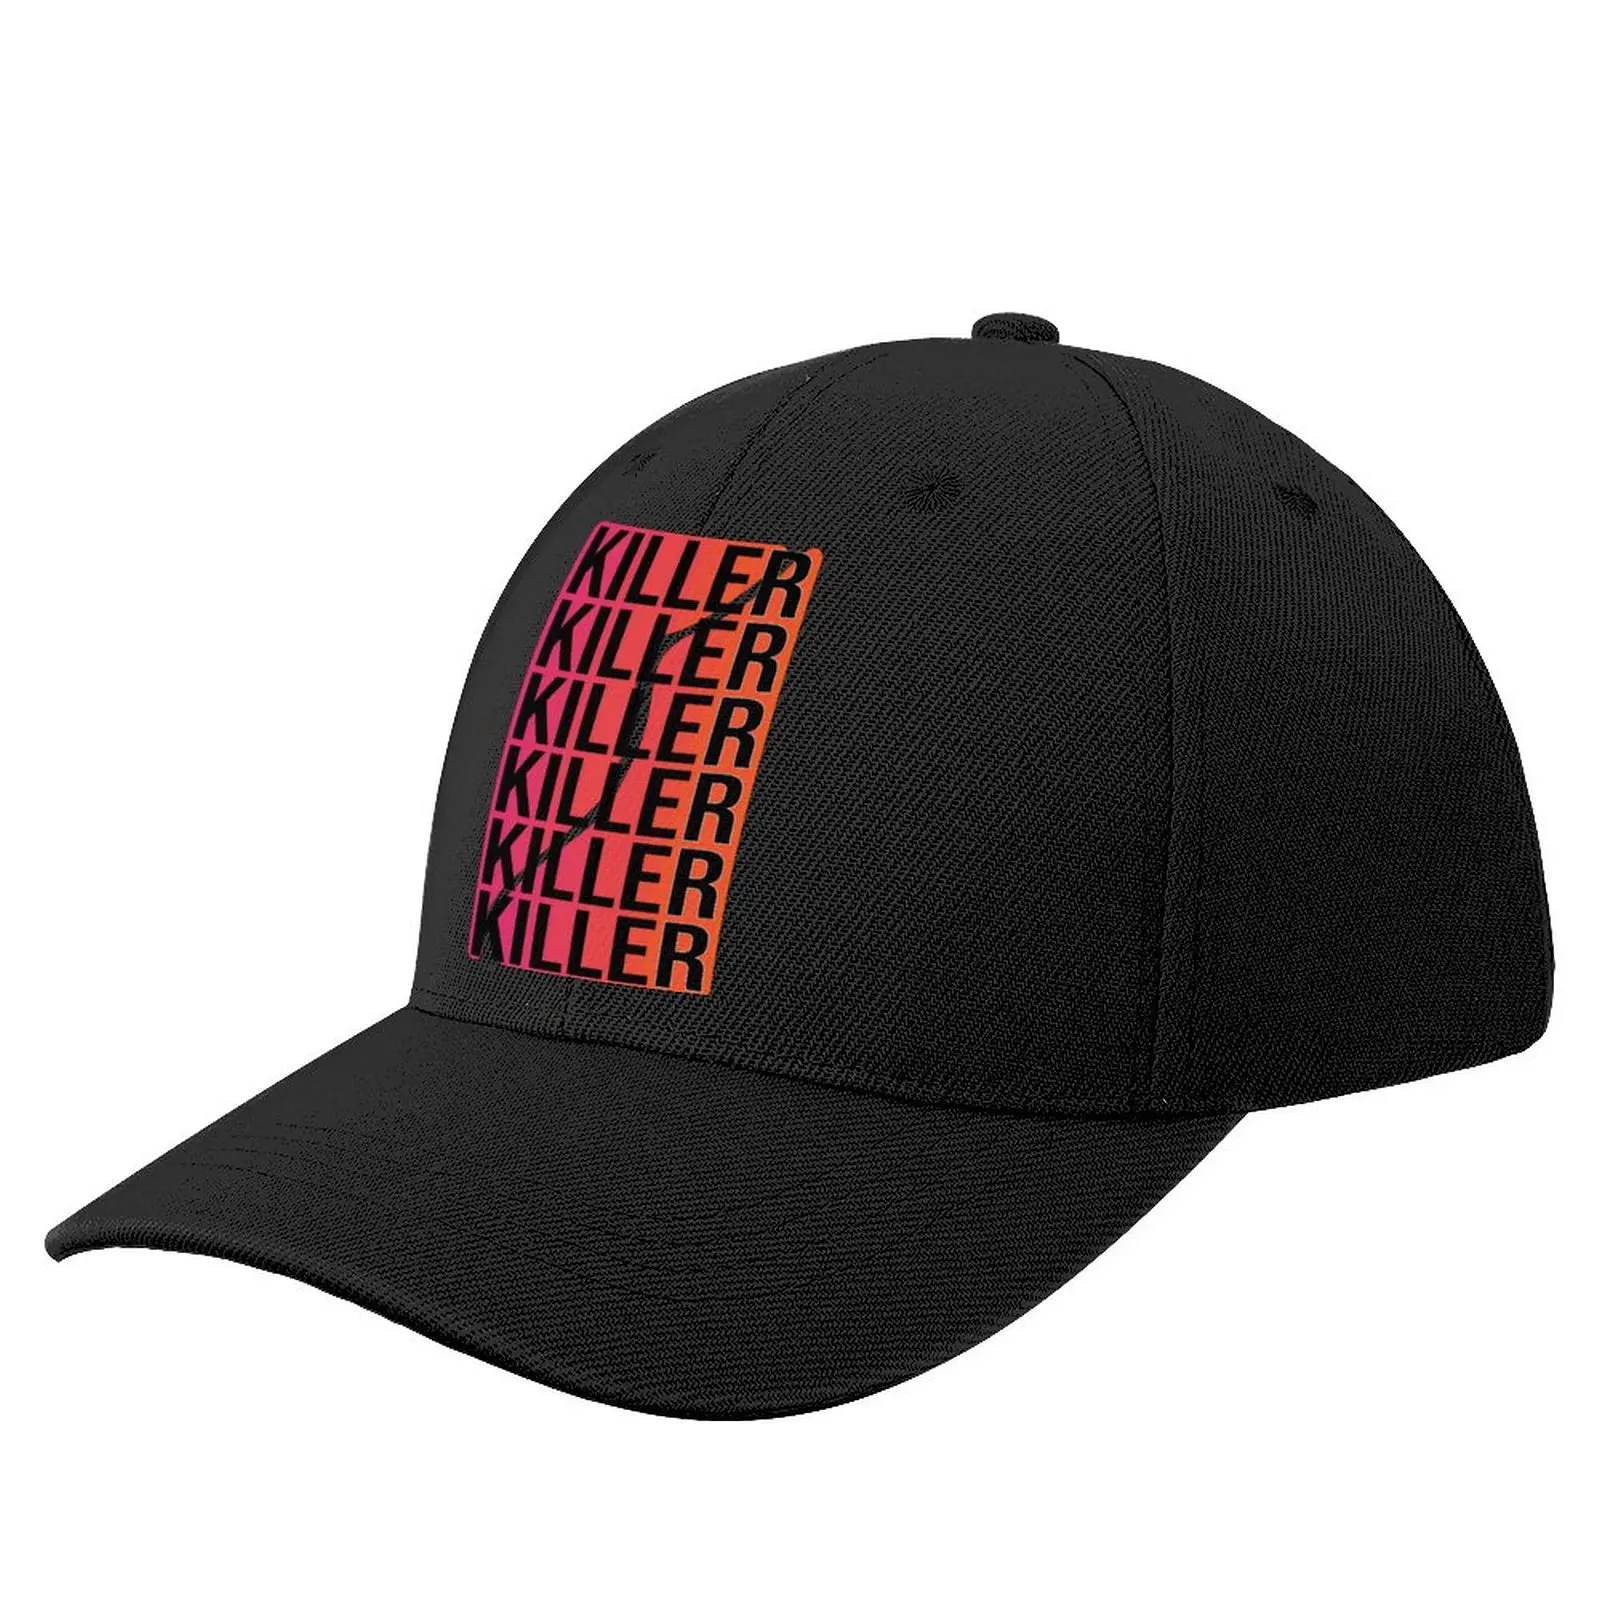 

Бейсболка Killer Queen, кепка для бодибилдинга с УФ-защитой, традиционная Молодежная Кепка из полиэстера на заказ